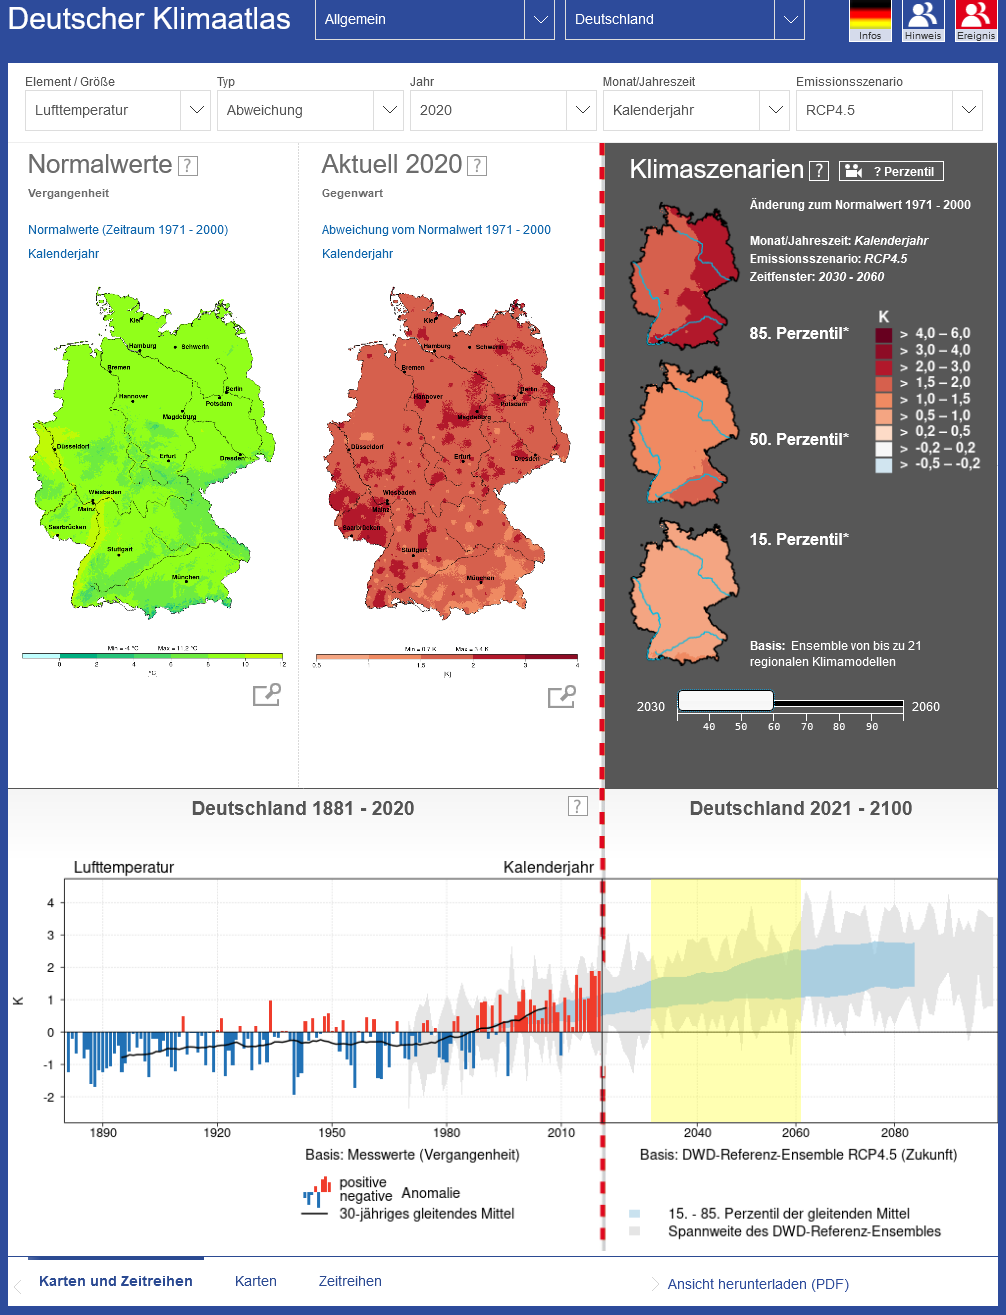 Ausschnitt aus dem Deutschen Klimaatlas: Gegenüberstellung mehrerer Deutschlandkarten mit verschiedenen Parametern